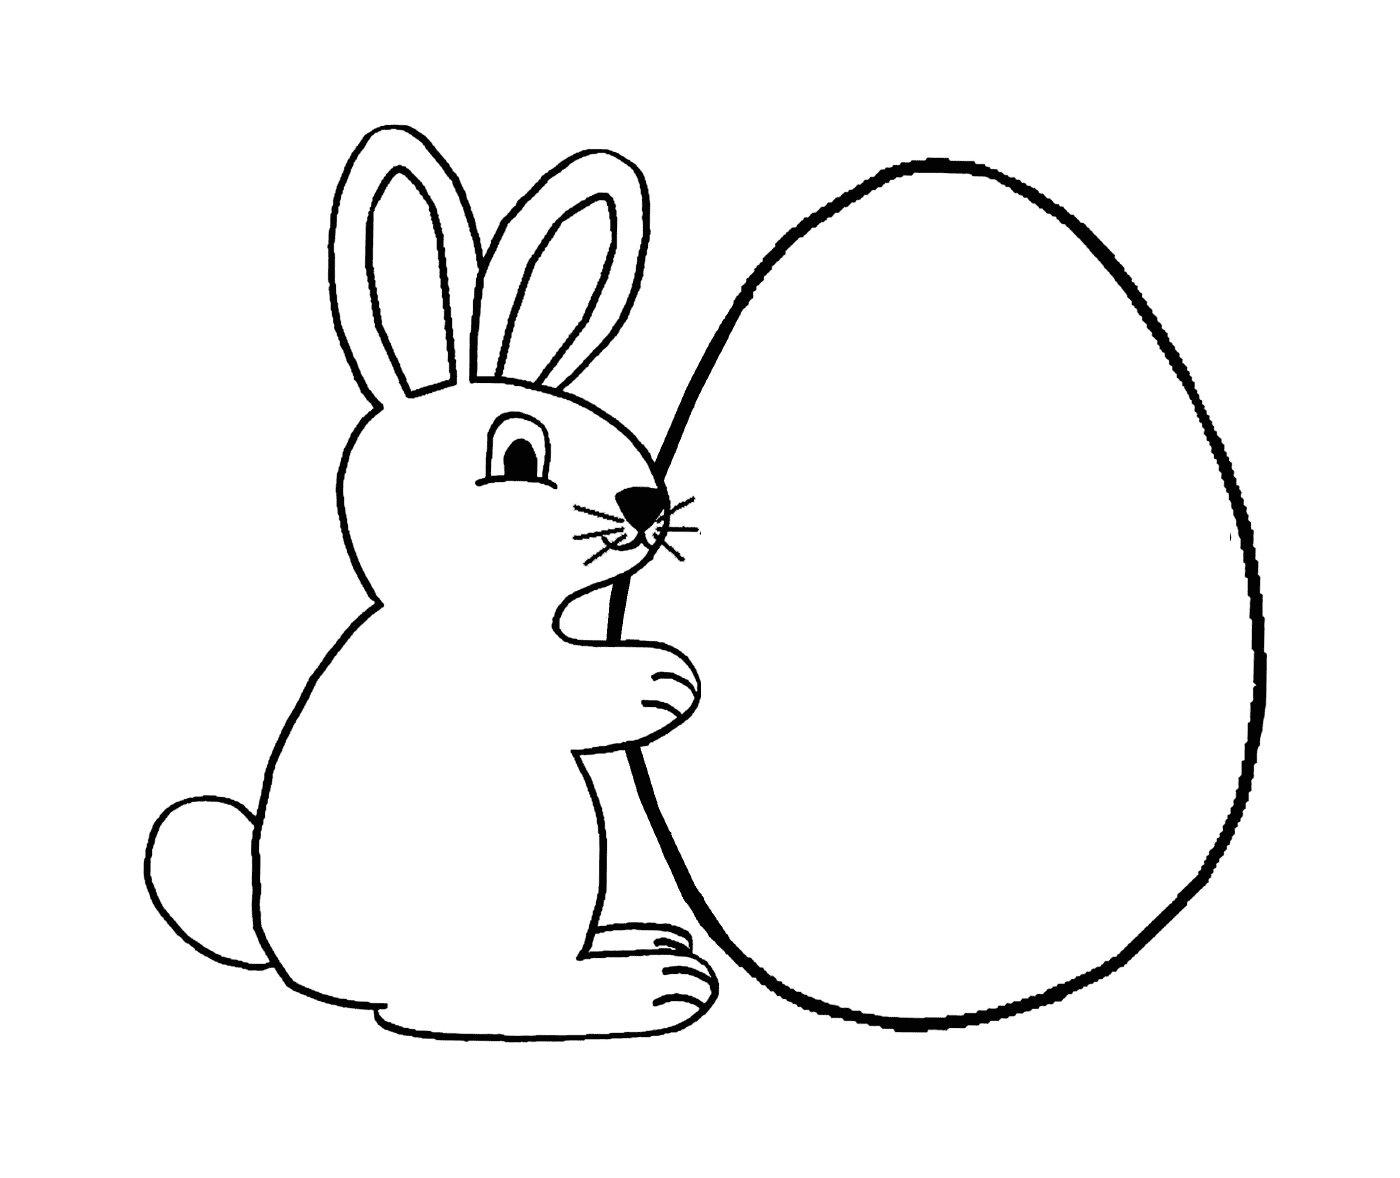  Coelho perto de um ovo de Páscoa 